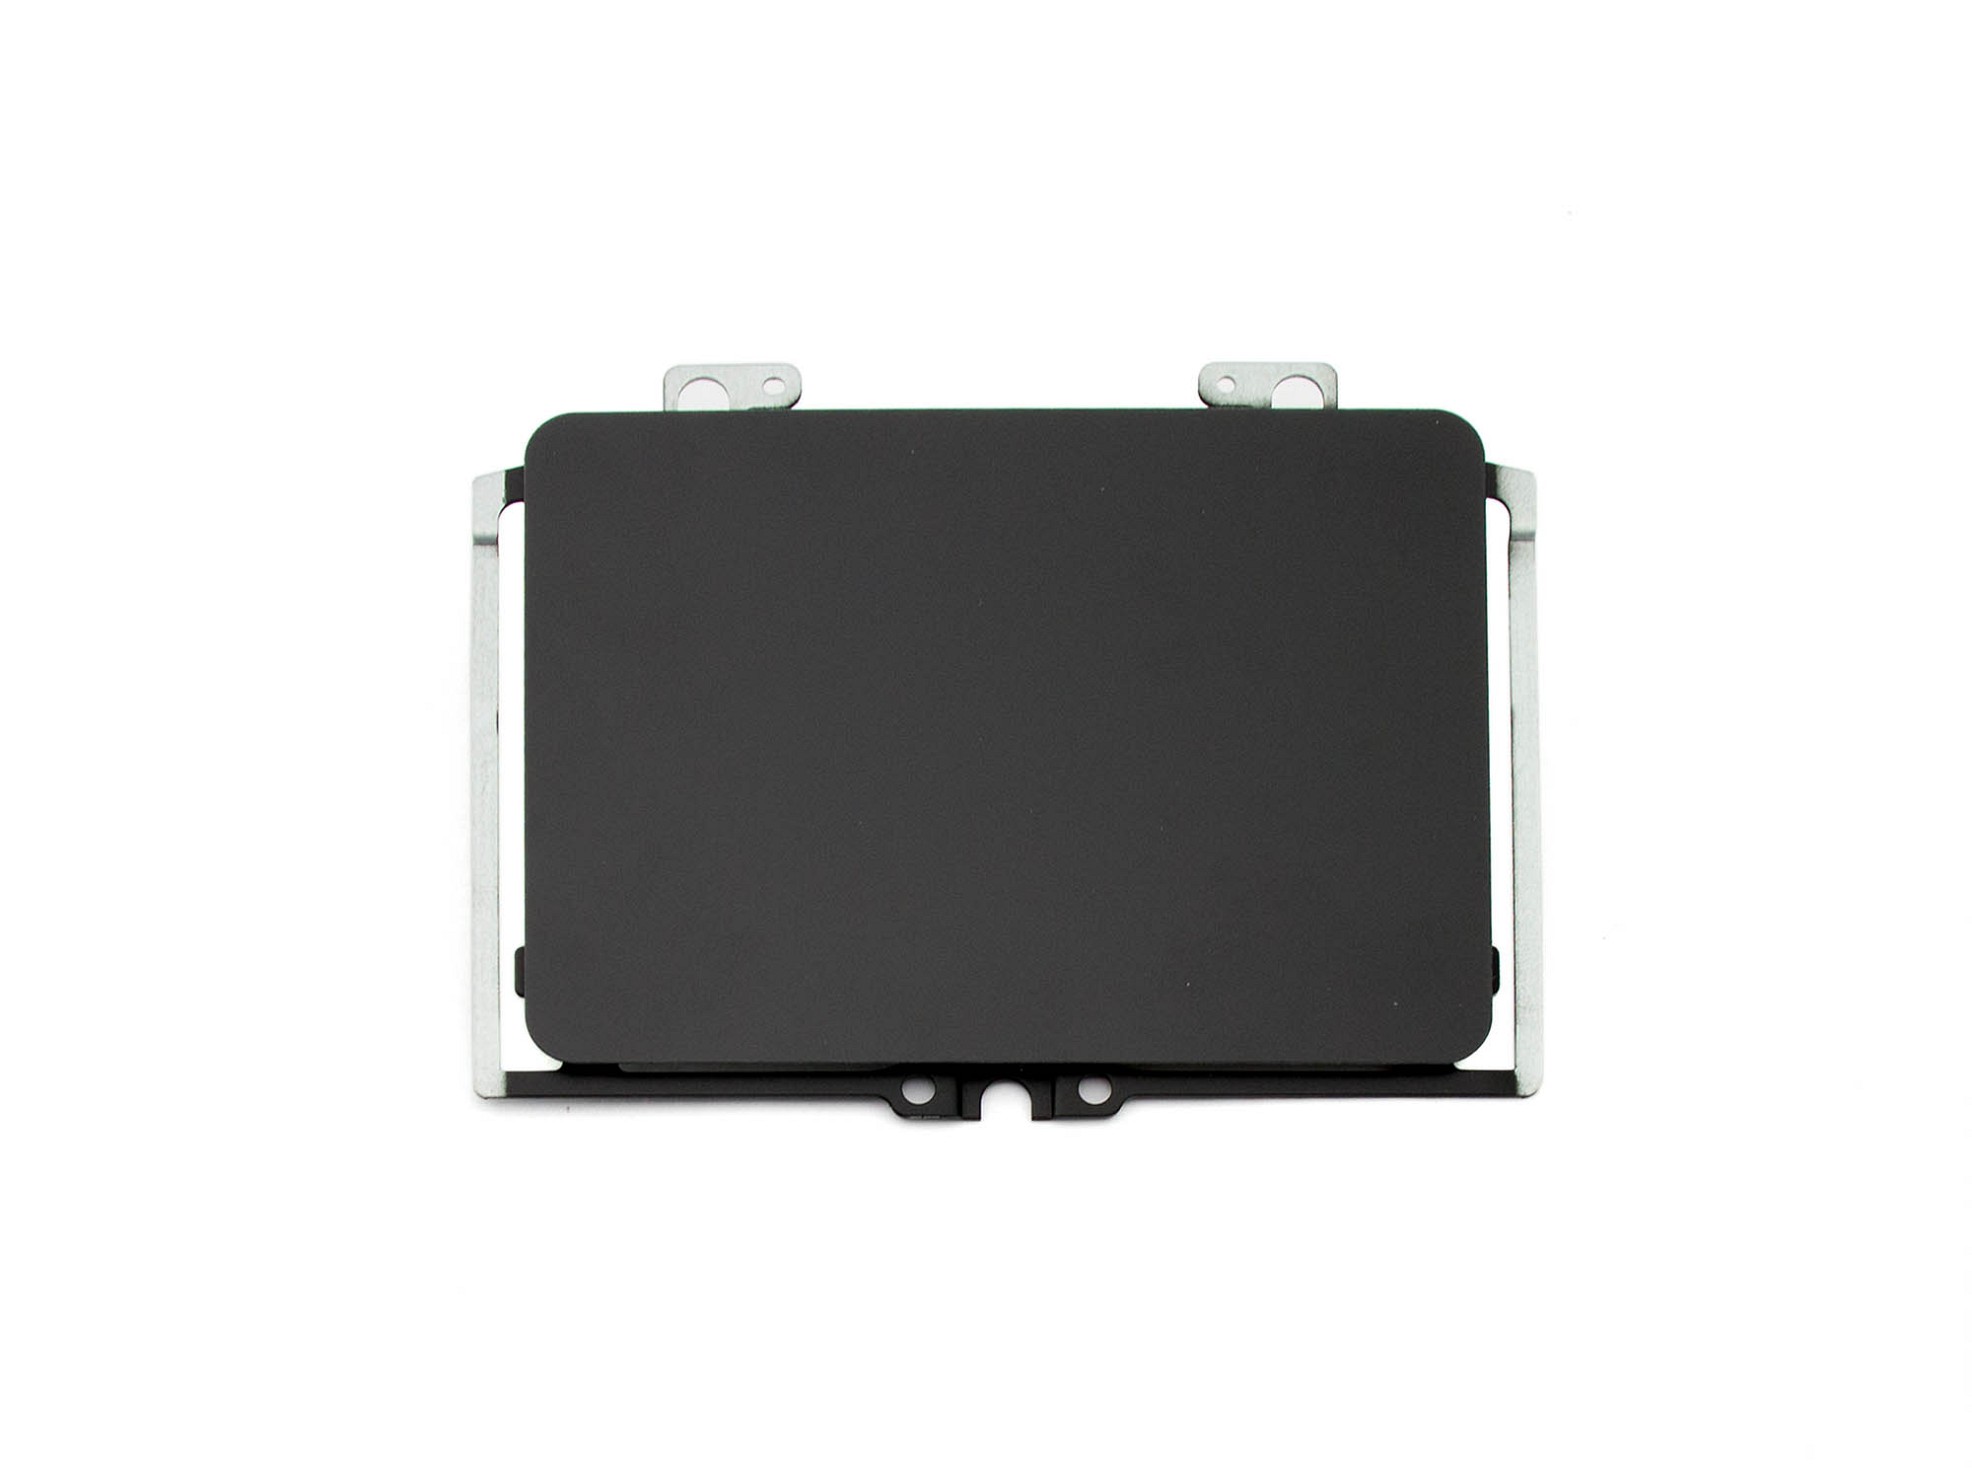 Acer 920-002755-06 RevA Touchpad Board (schwarz glänzend)